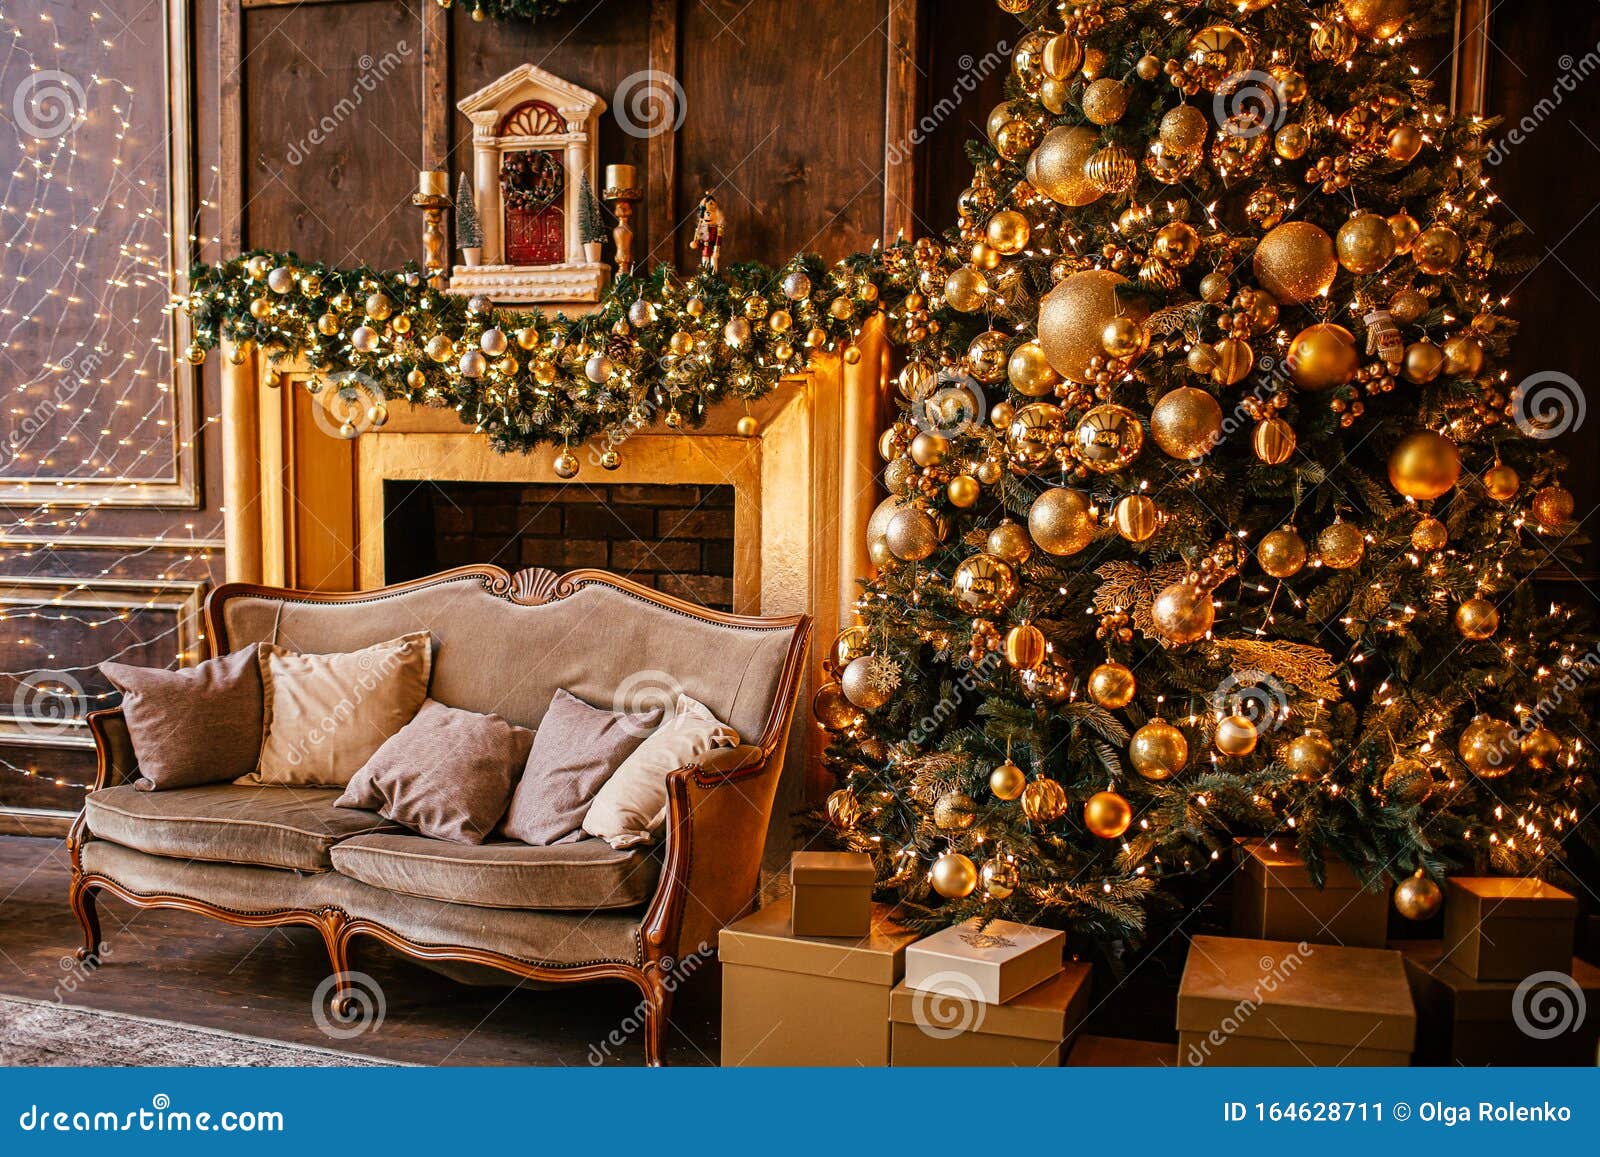 Ánh sáng giáng sinh là điểm nhấn tuyệt vời trong không gian đón lễ Noel. Hãy đến và chiêm ngưỡng những bức ảnh đầy cảm hứng về ánh đèn lung linh, tạo nên không khí đầy ấm áp trong nhà.